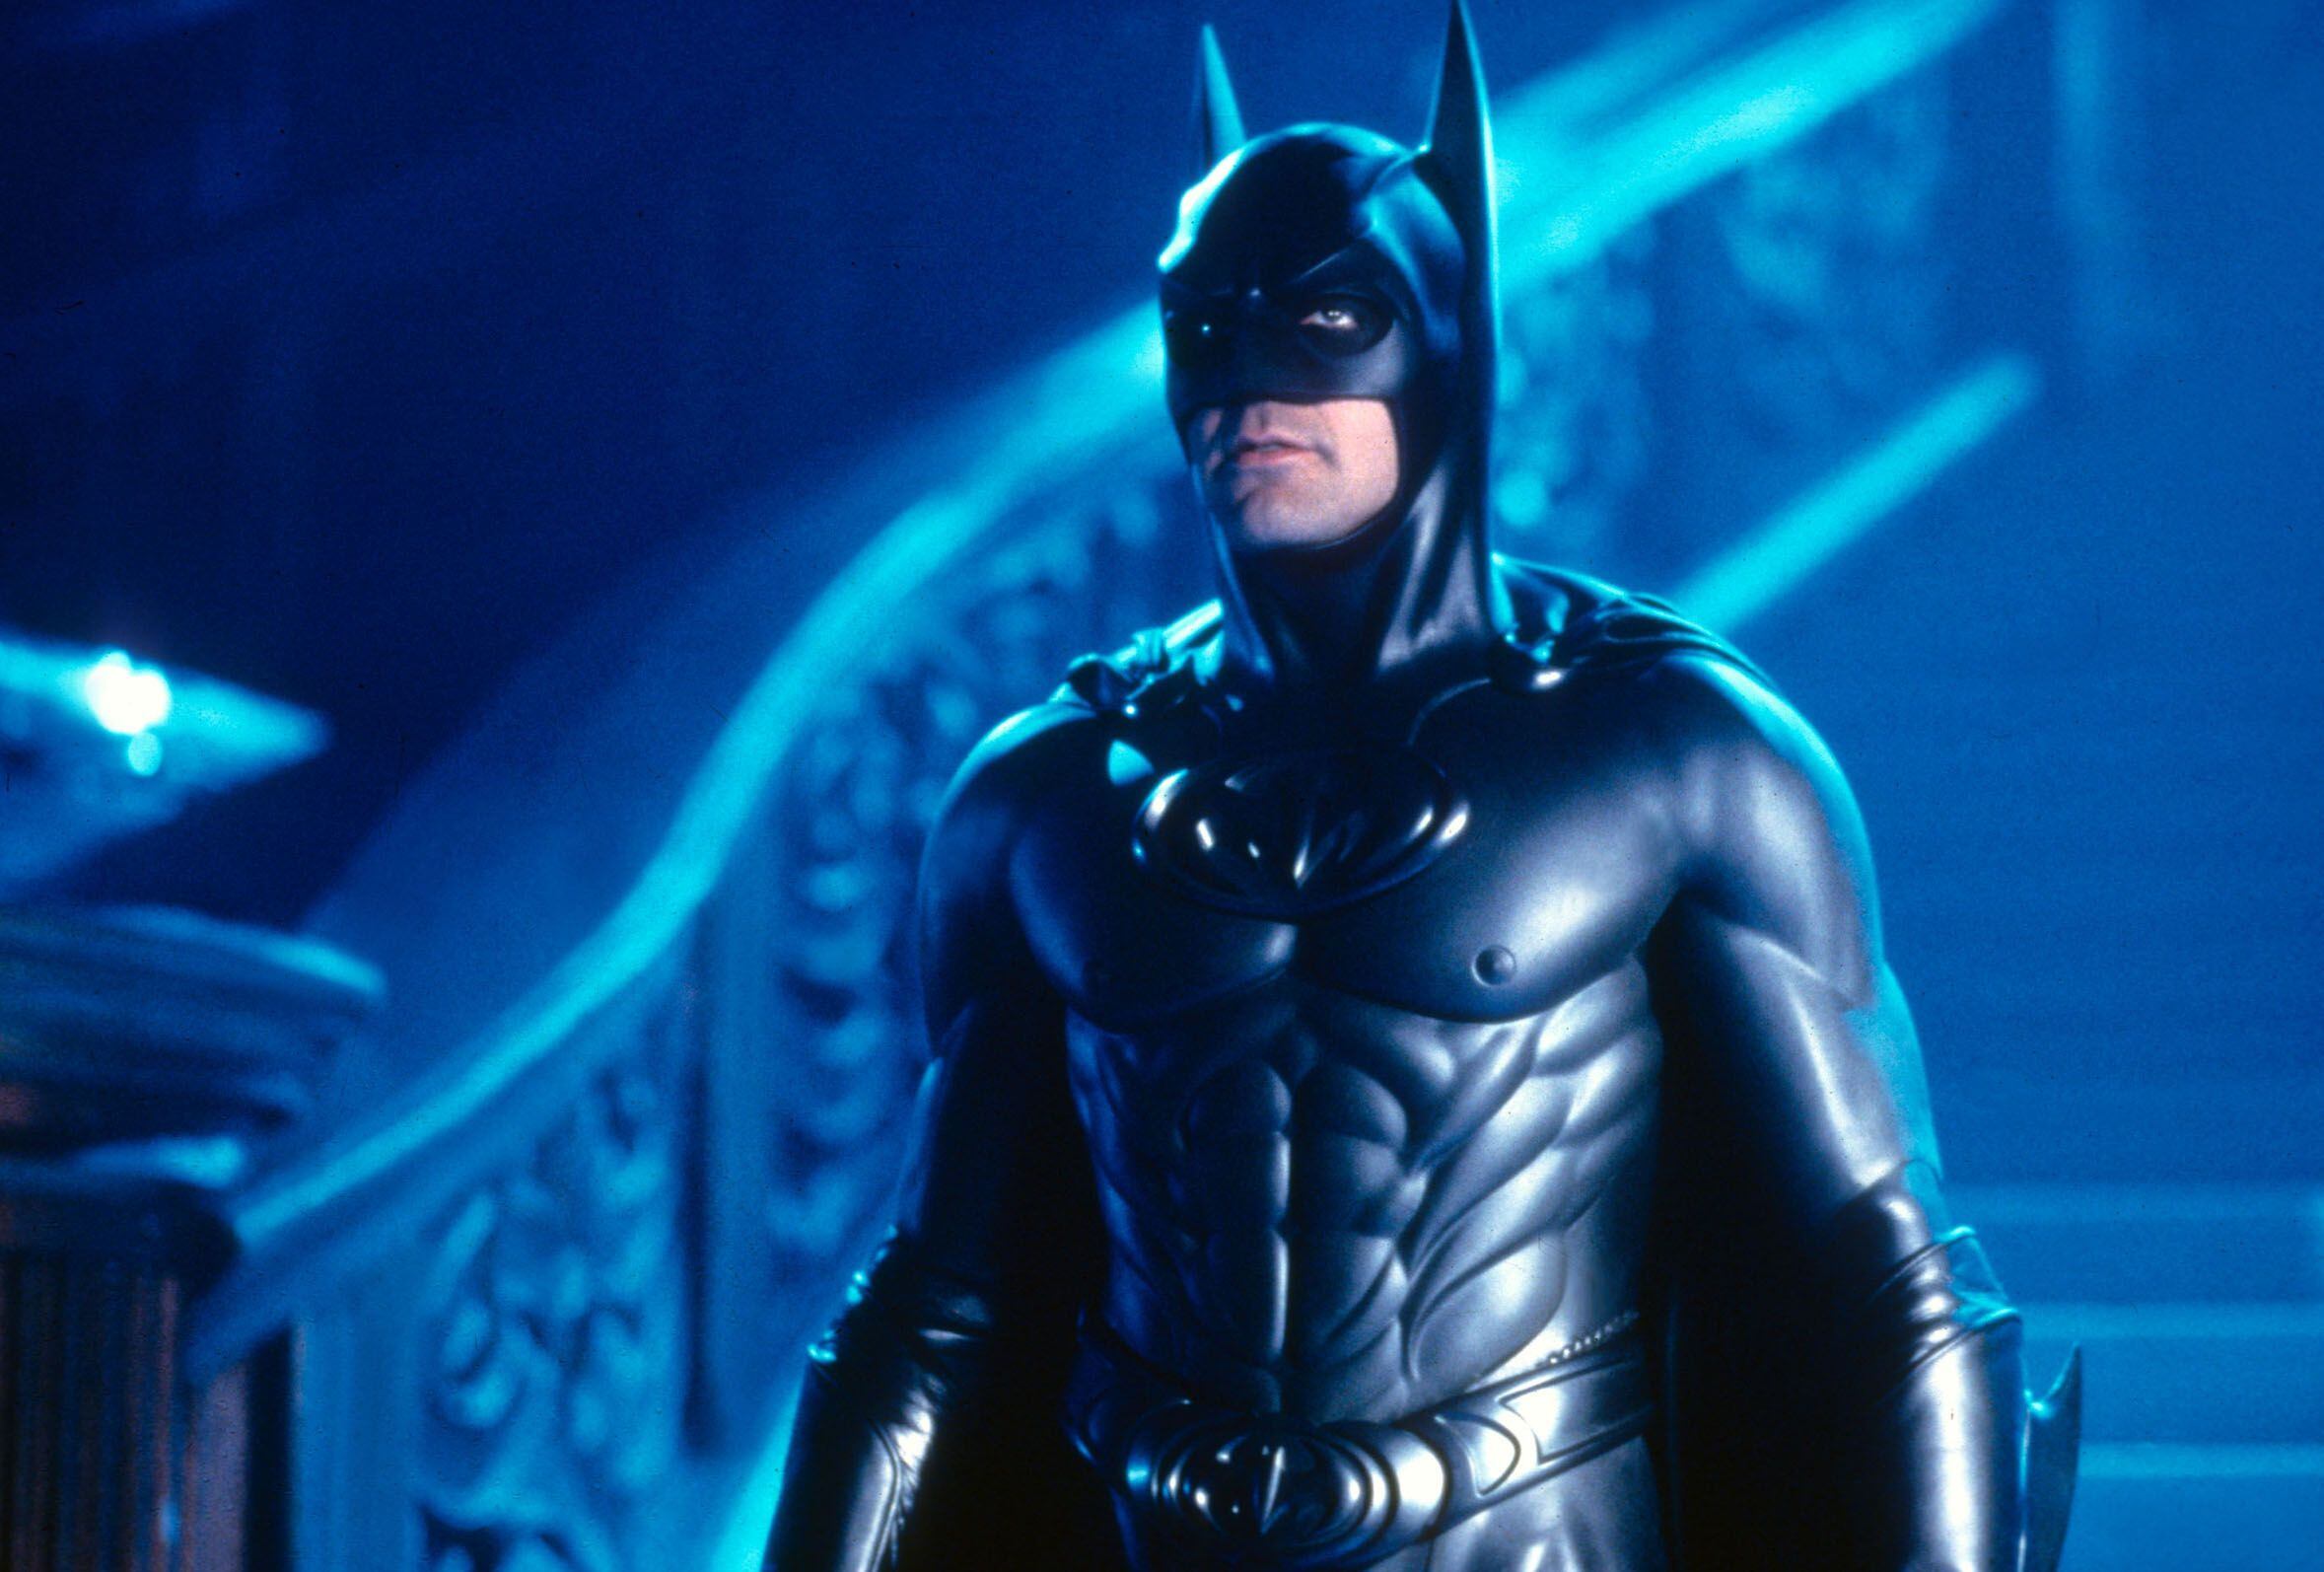 George Clooney's infamous Batman suit is up for auction